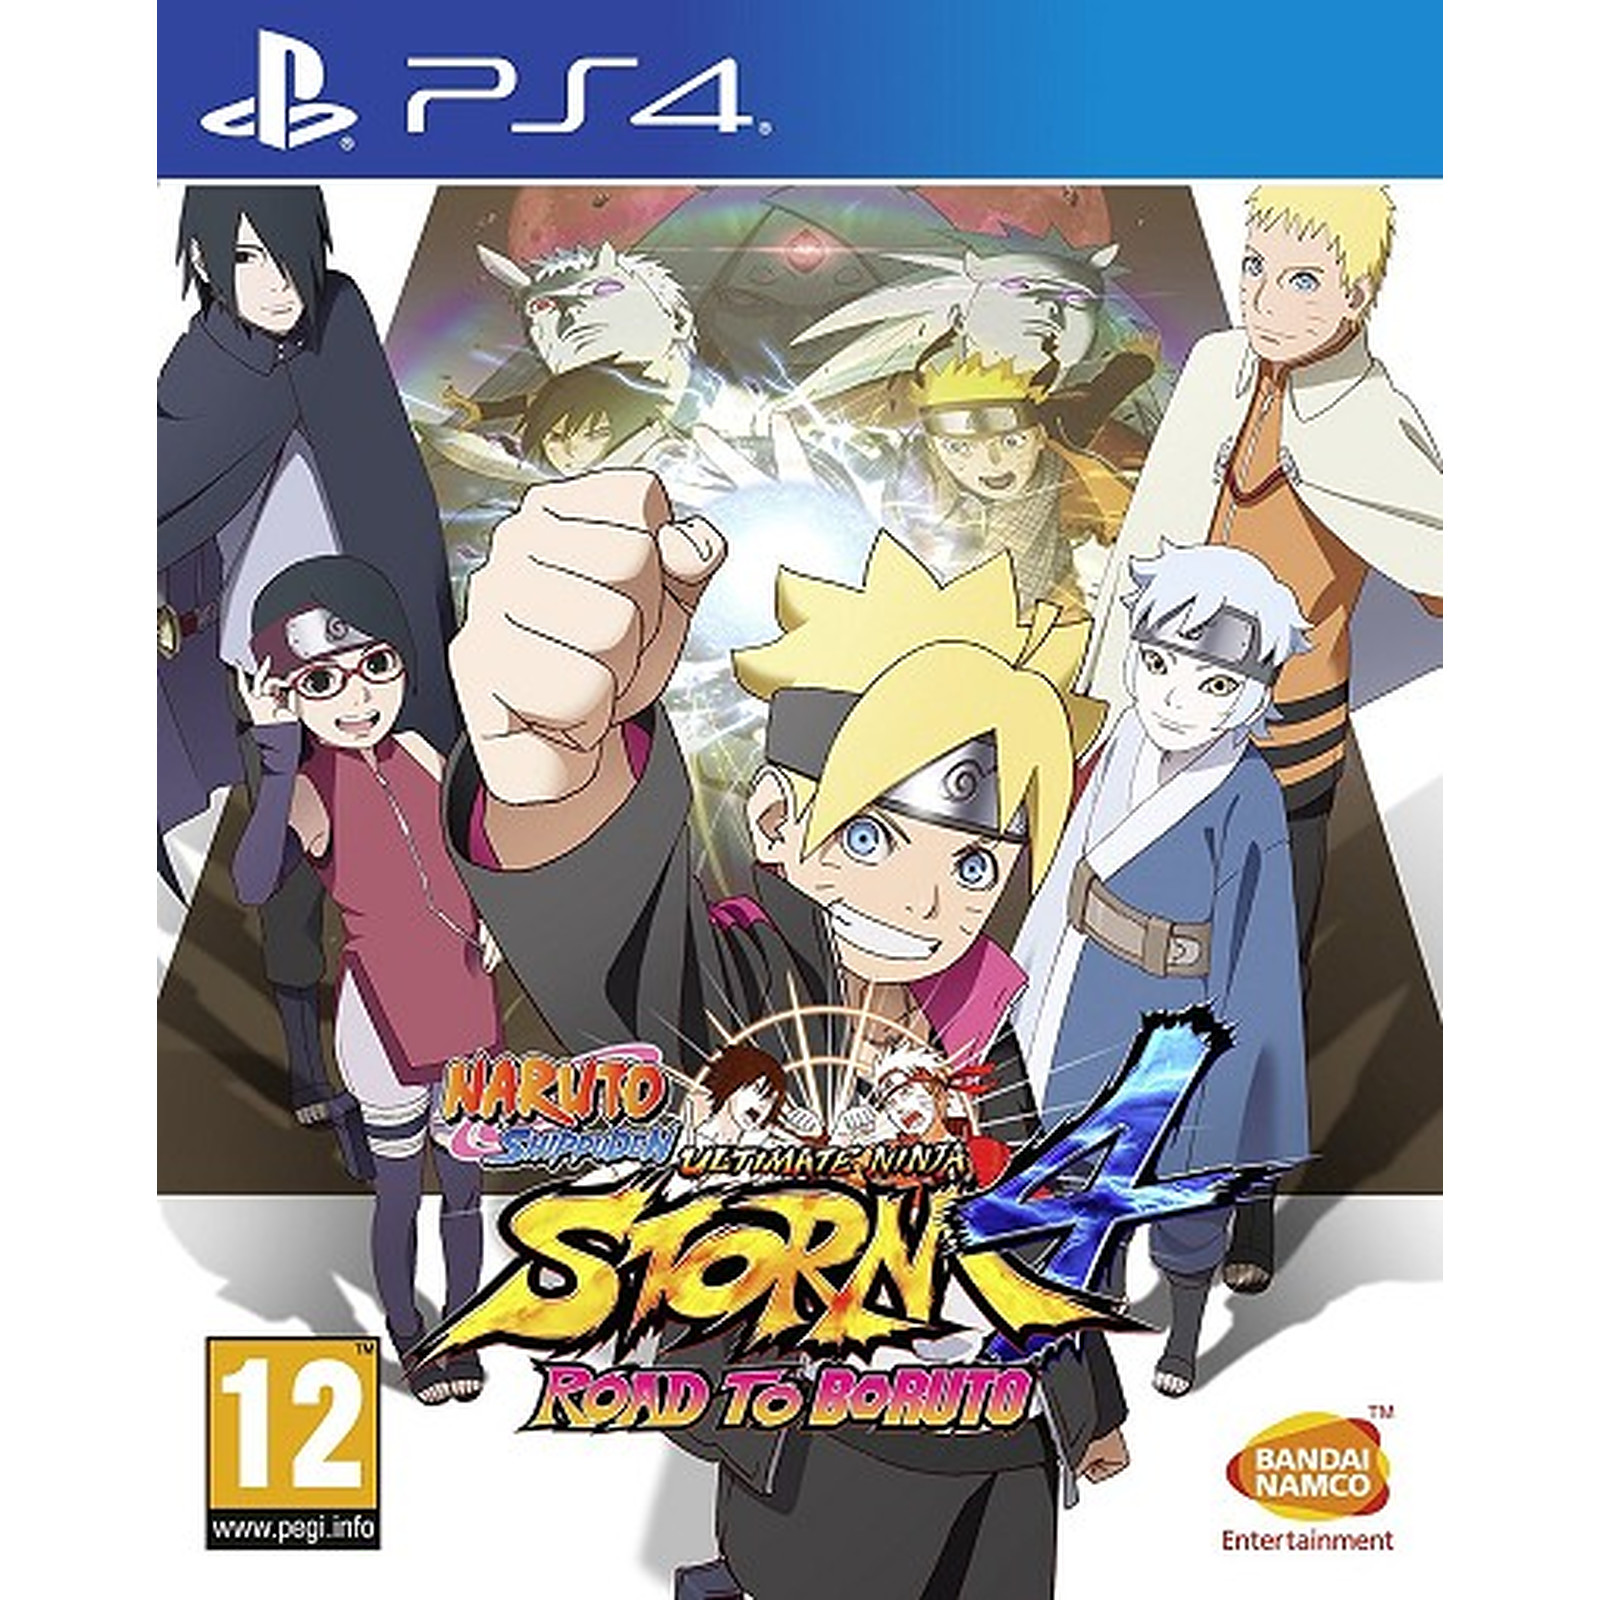 Naruto Shippuden Ultimate Ninja Storm 4 Road to Boruto (PS4) - Jeux PS4 Bandai Namco Games